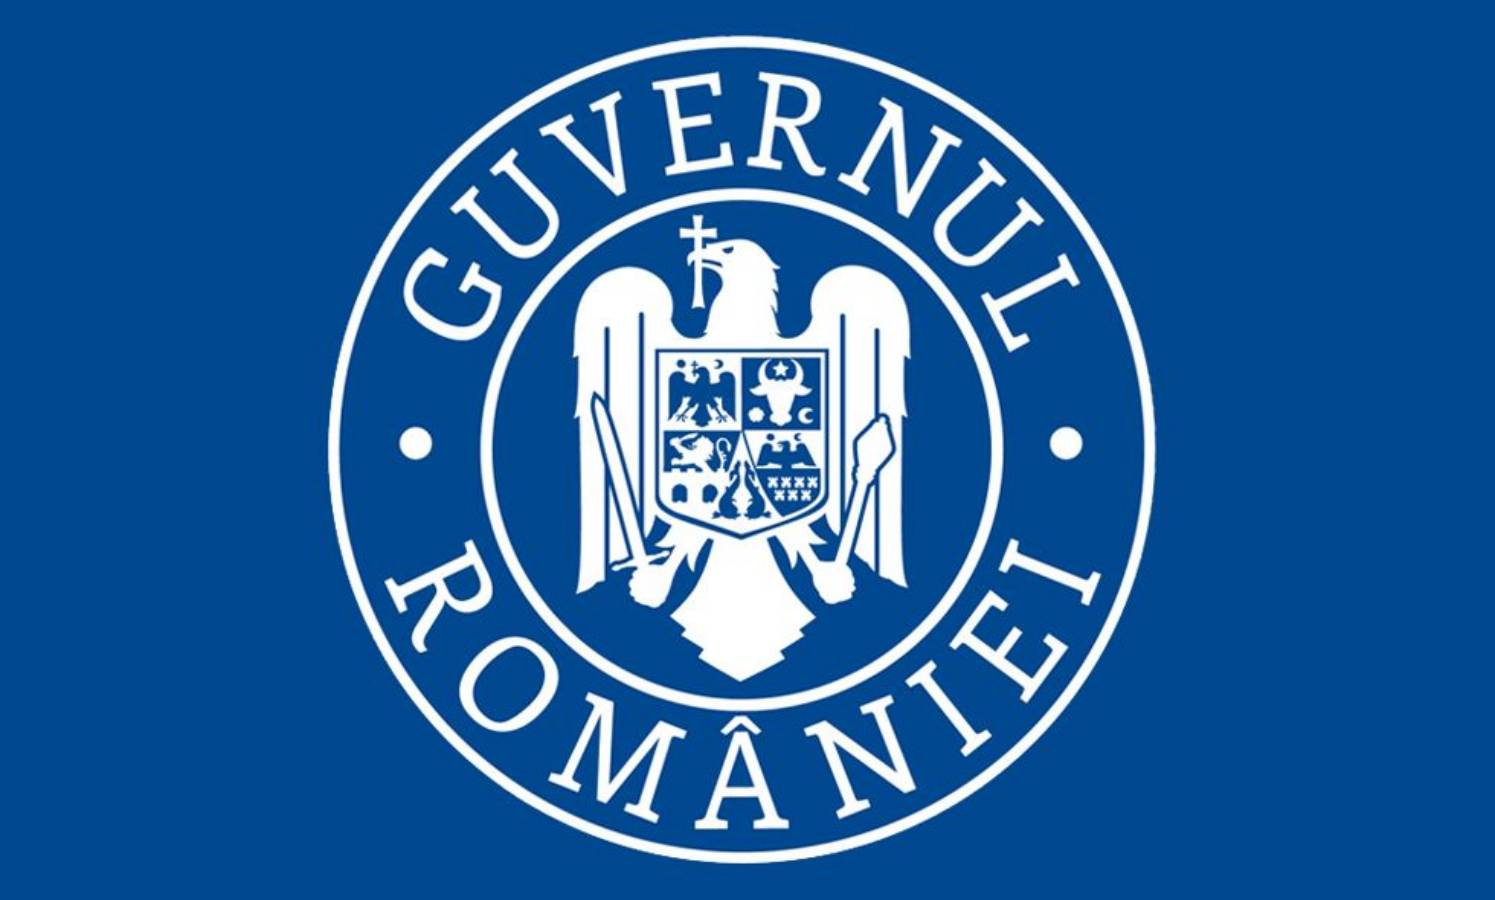 Gobierno rumano 108.294 rumanos vacunados contra el coronavirus